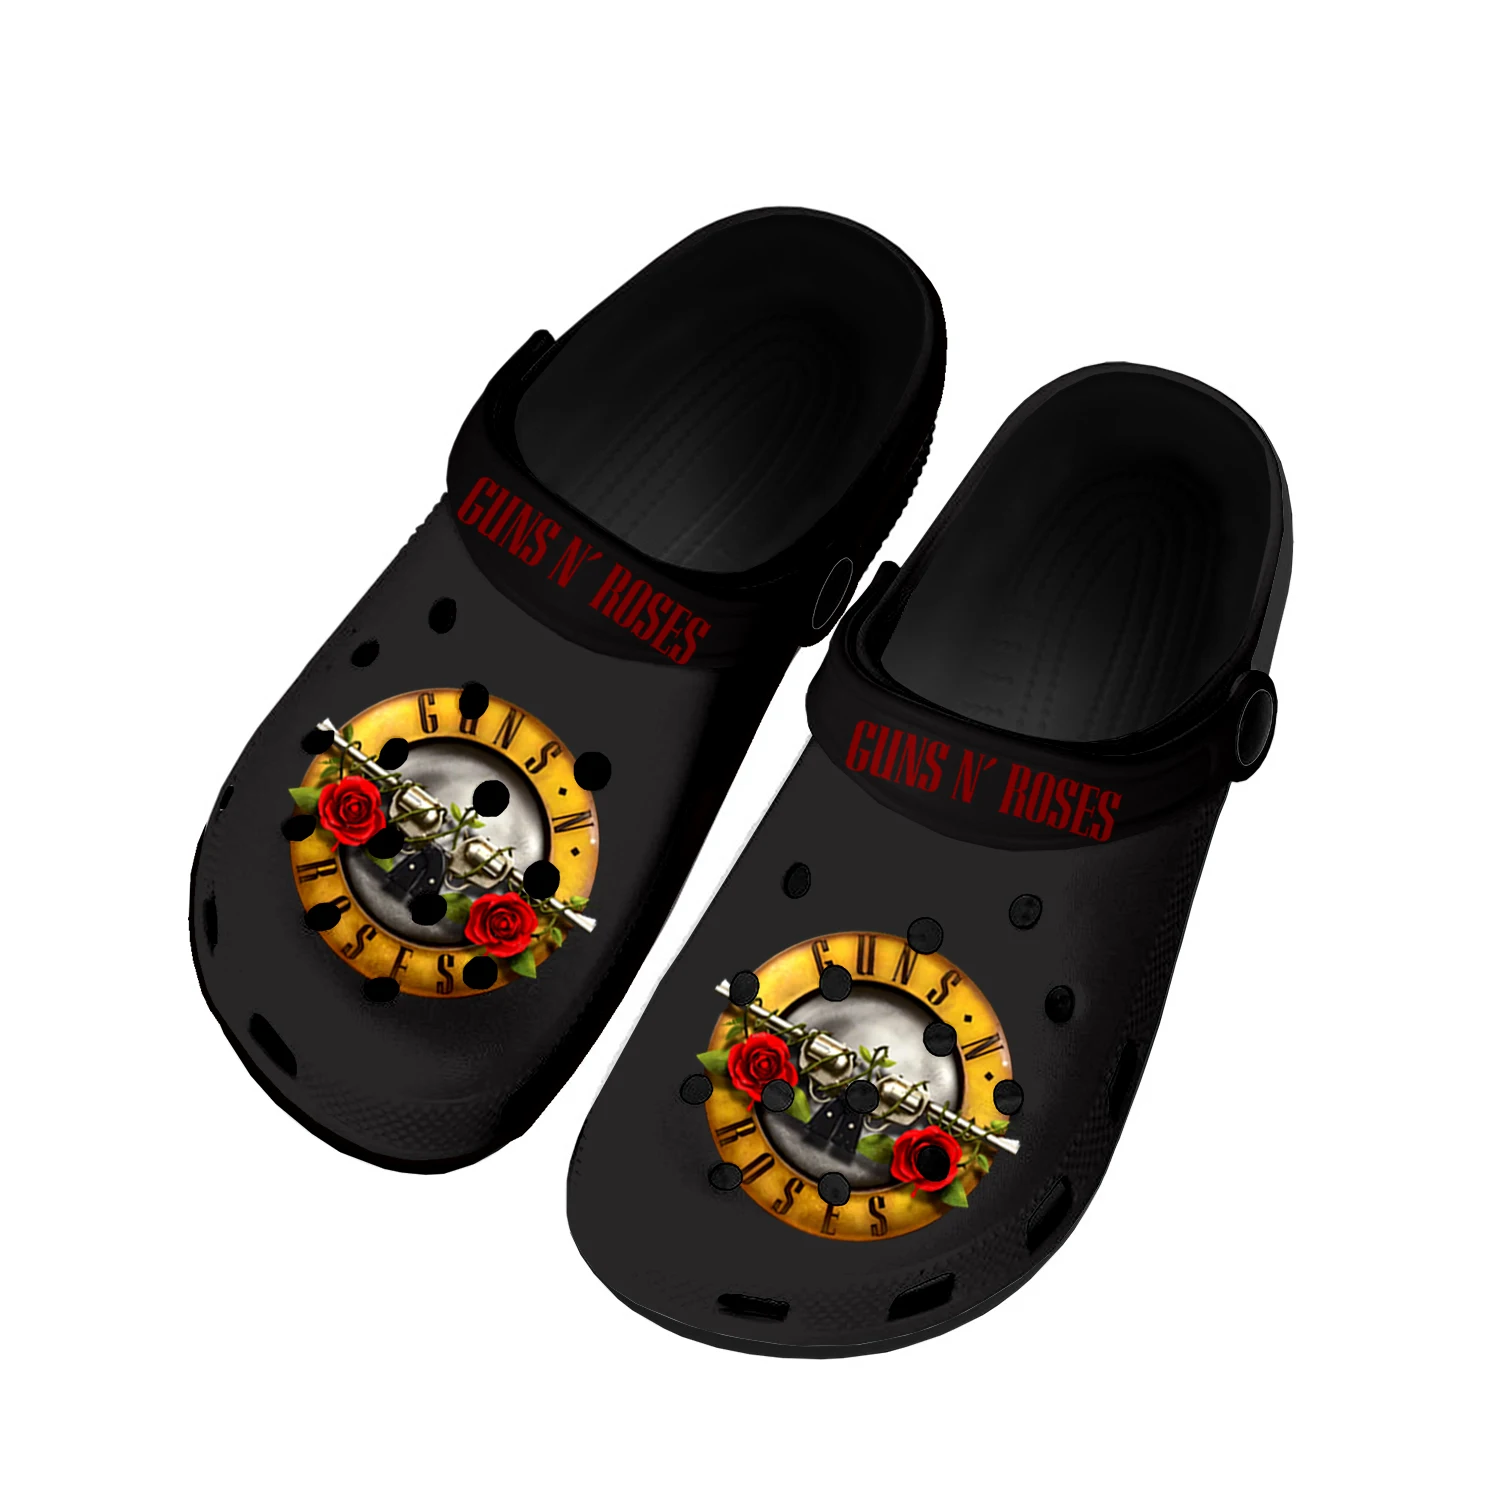 

Большие металлические кроссовки Guns N Roses для дома и пляжа